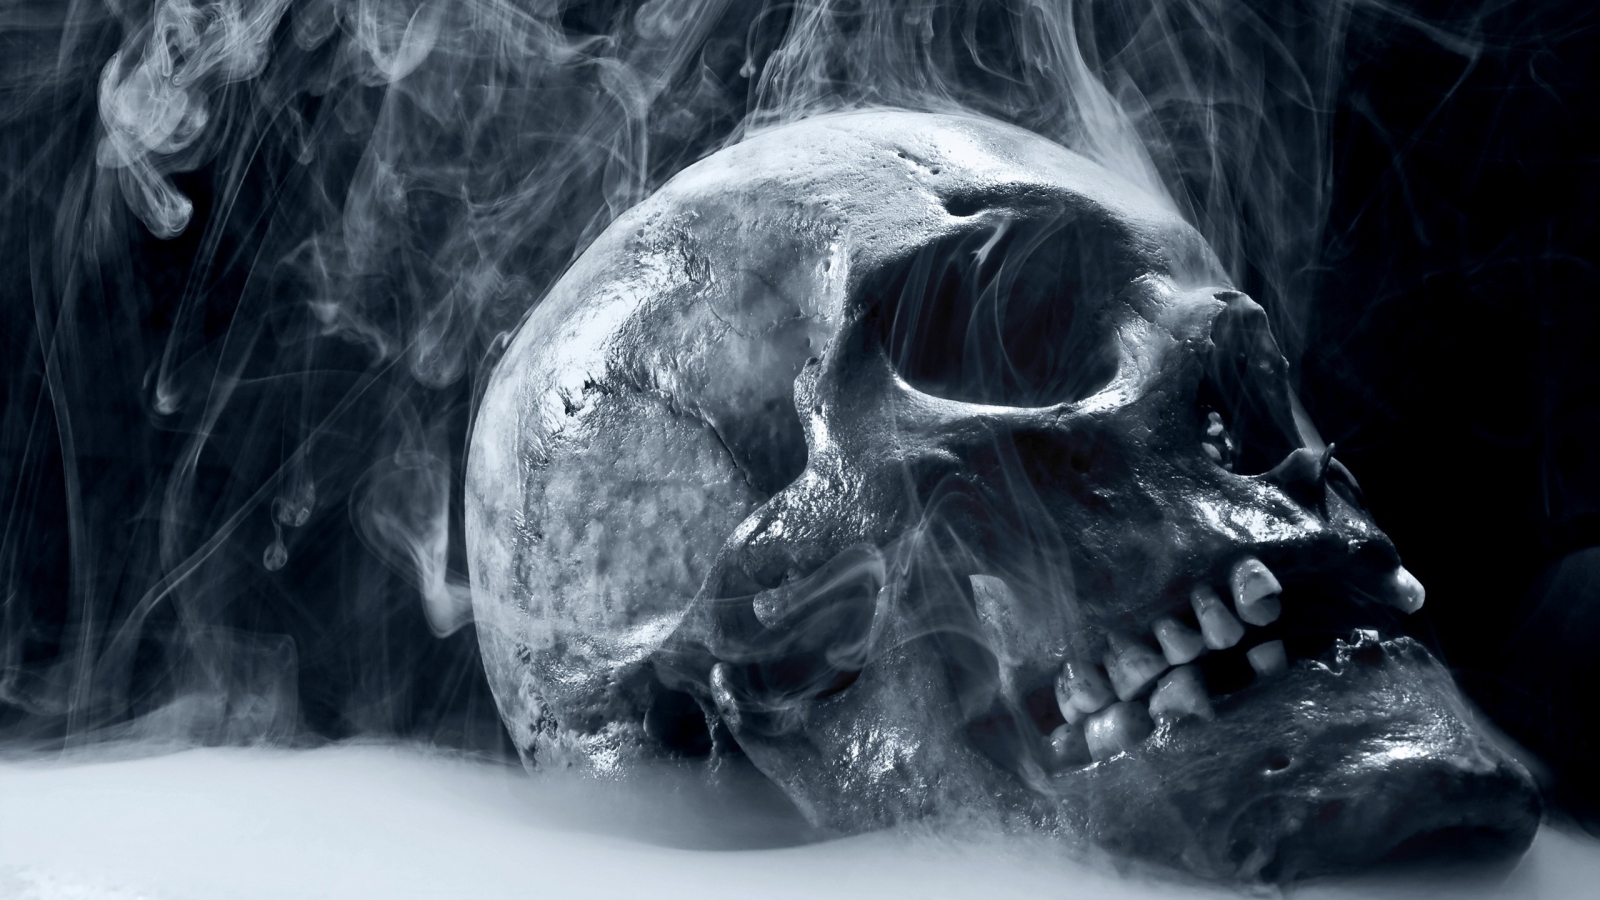 Skull Smoking for 1600 x 900 HDTV resolution